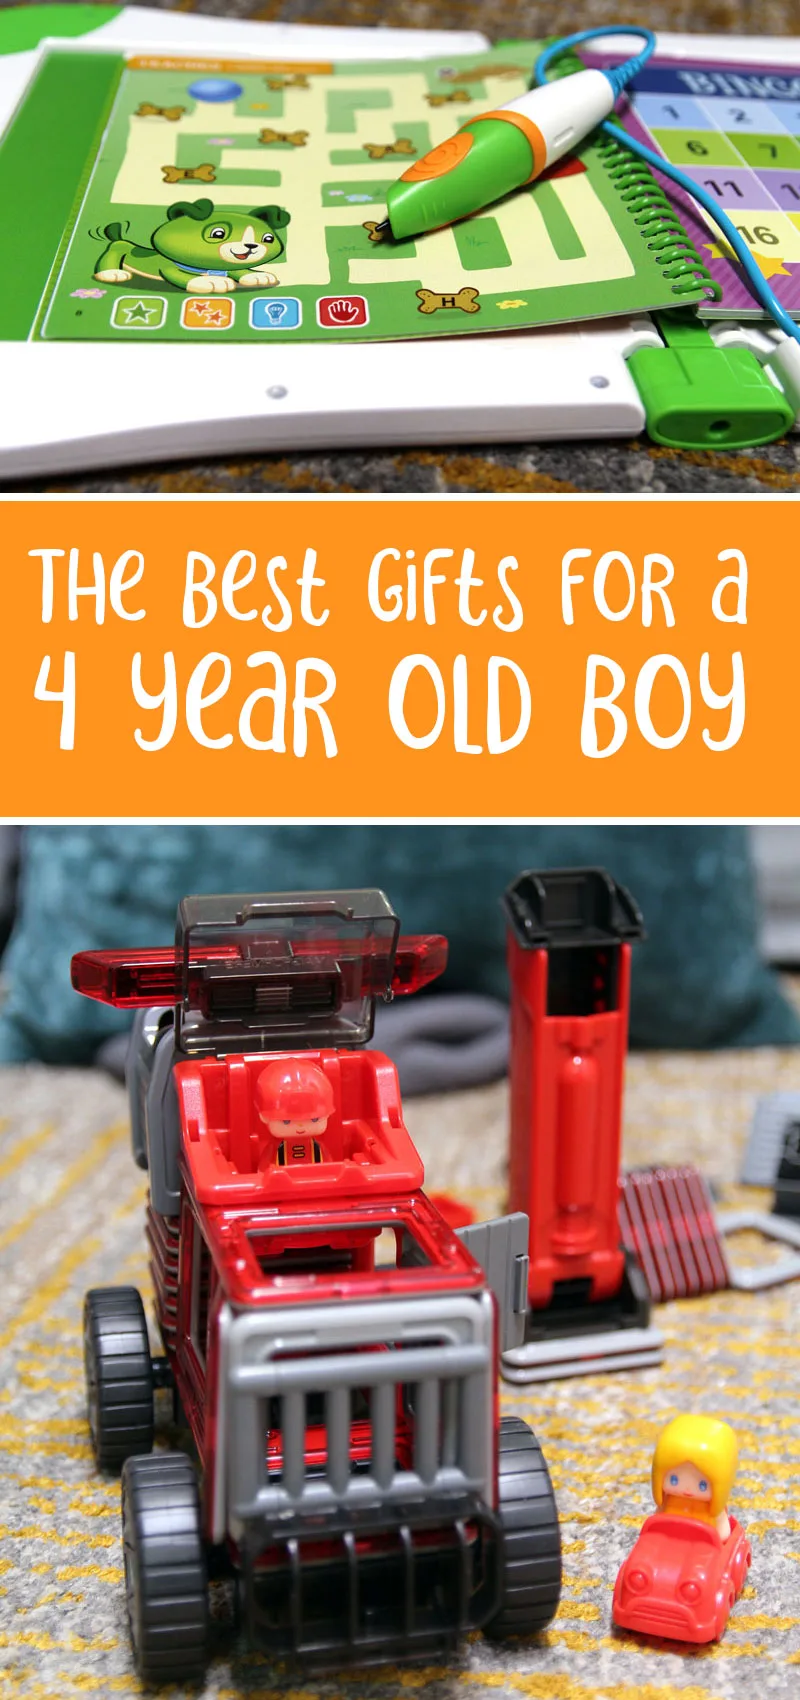 Four year old boy birthday gift ideas